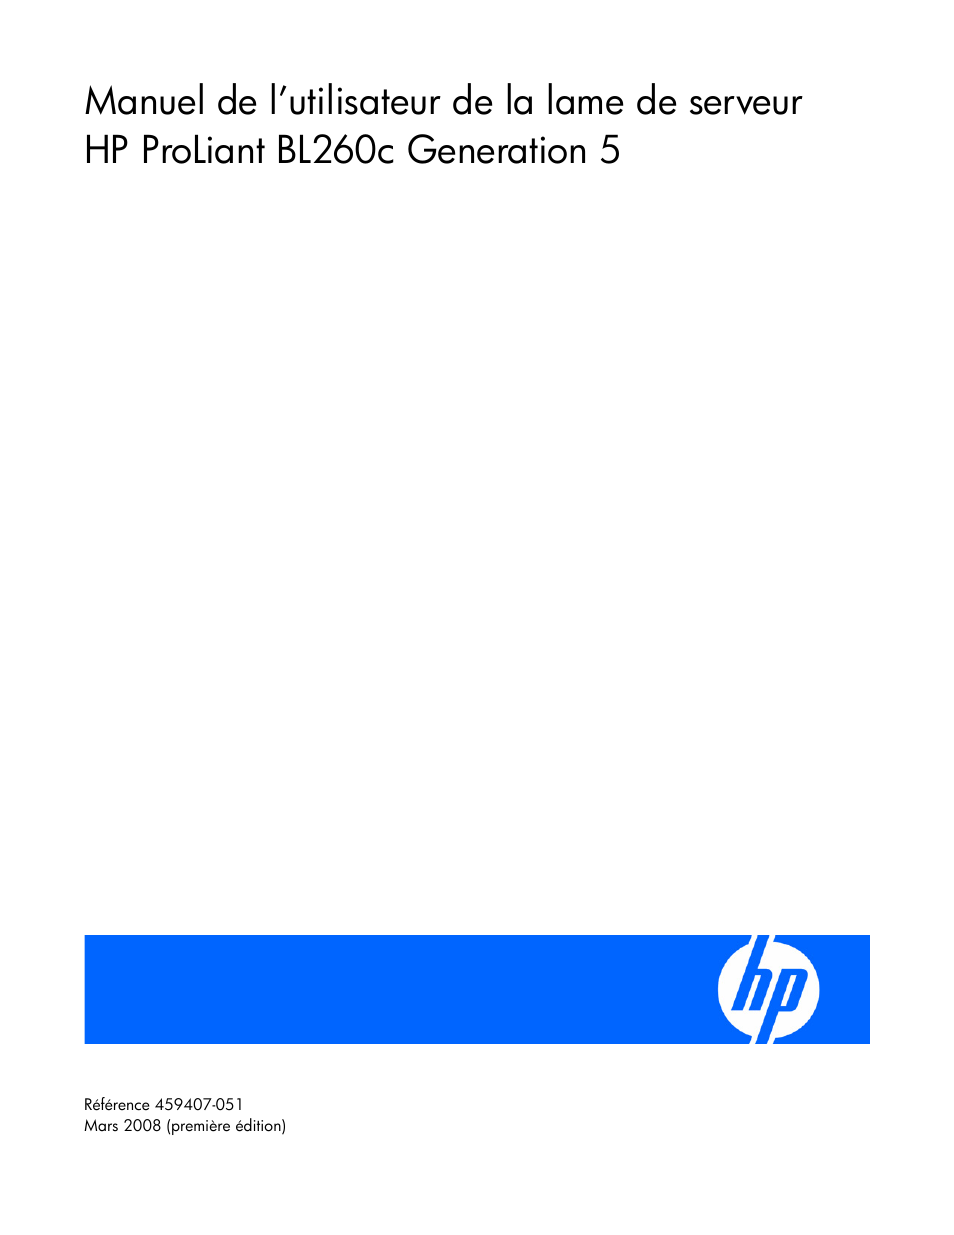 HP Serveur lame HP ProLiant BL260c G5 Manuel d'utilisation | Pages: 96